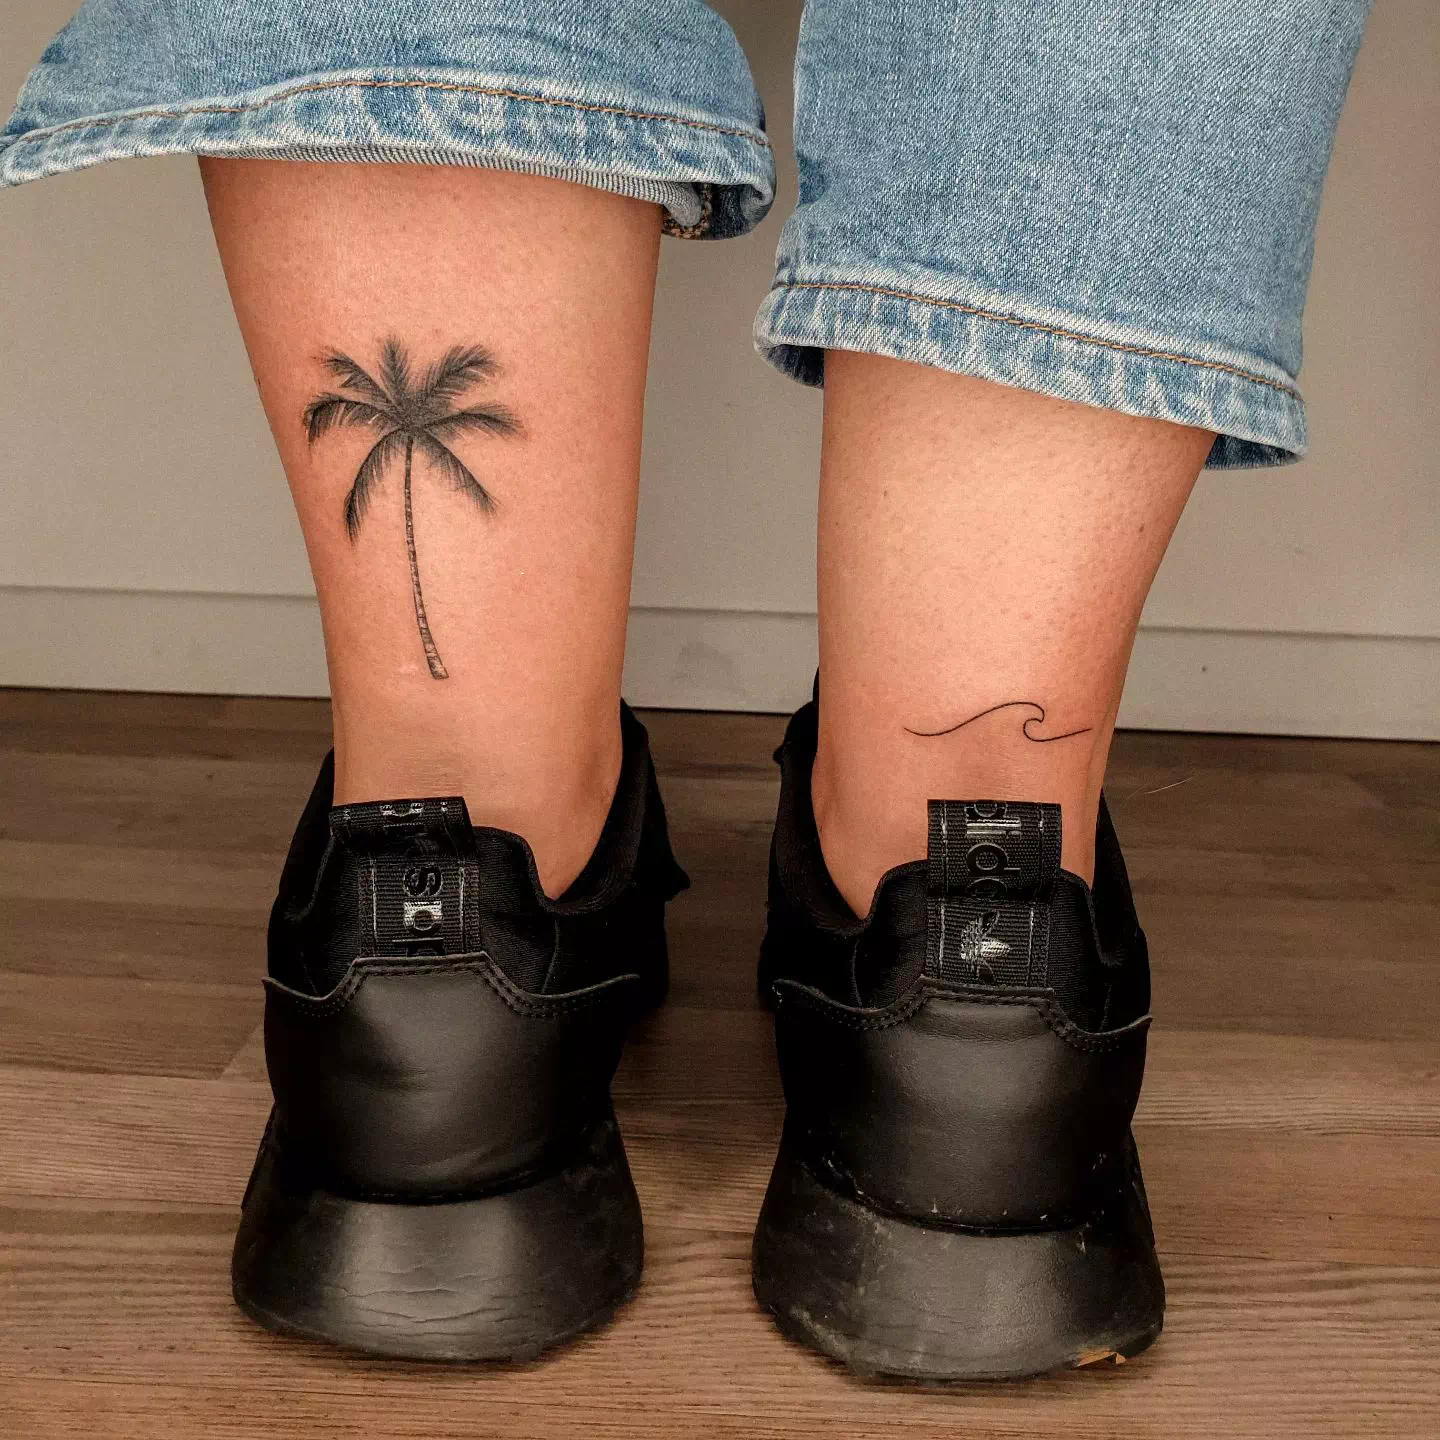 Palm Tree Tattoo am Knöchel 2